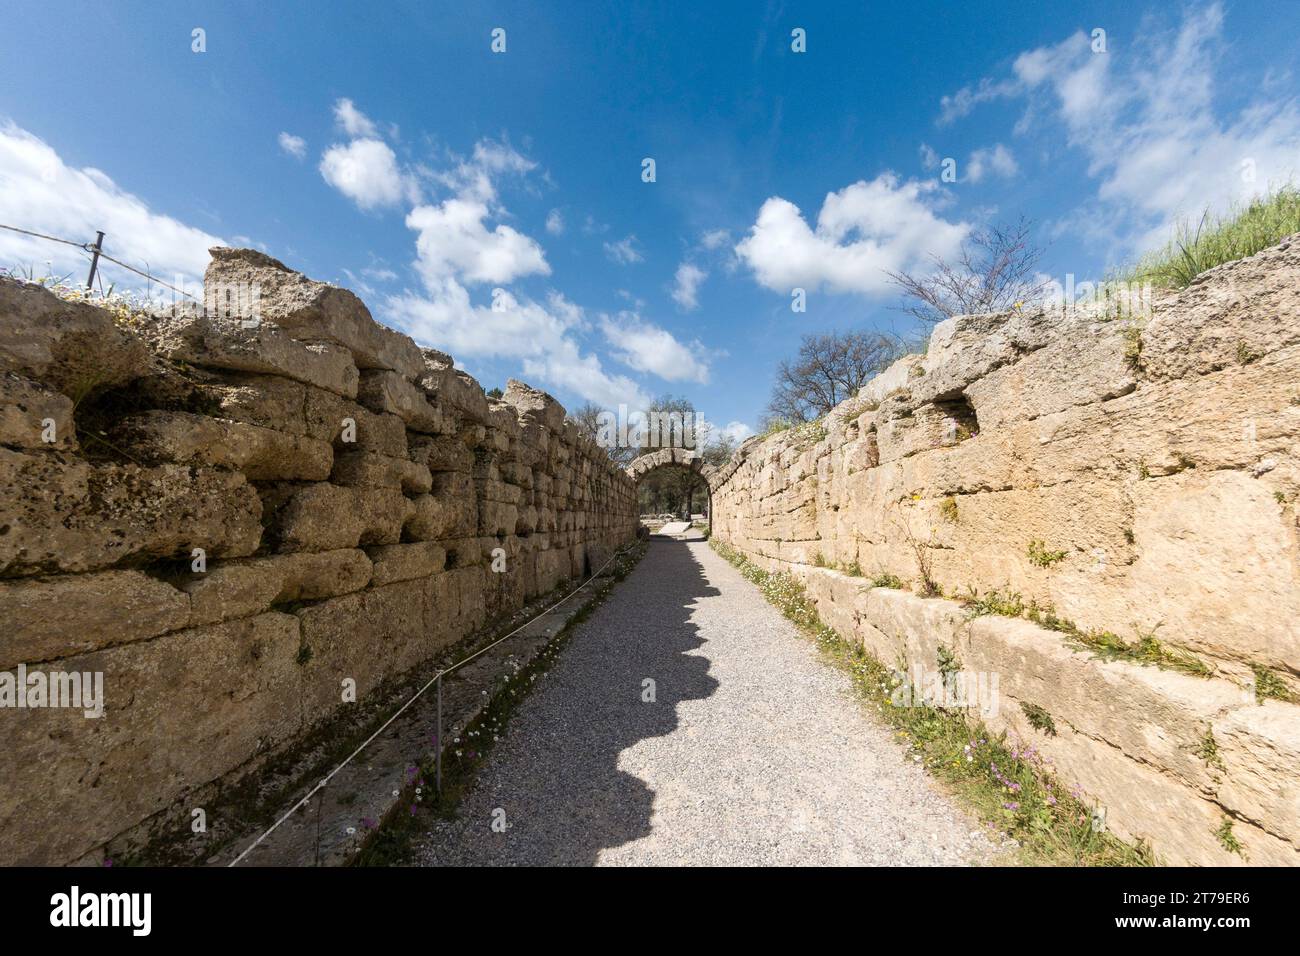 L'ingresso allo stadio nell'antico sito archeologico di Olimpia, luogo di nascita dei Giochi Olimpici originali, nel Peloponneso, in Grecia, in Europa. Foto Stock